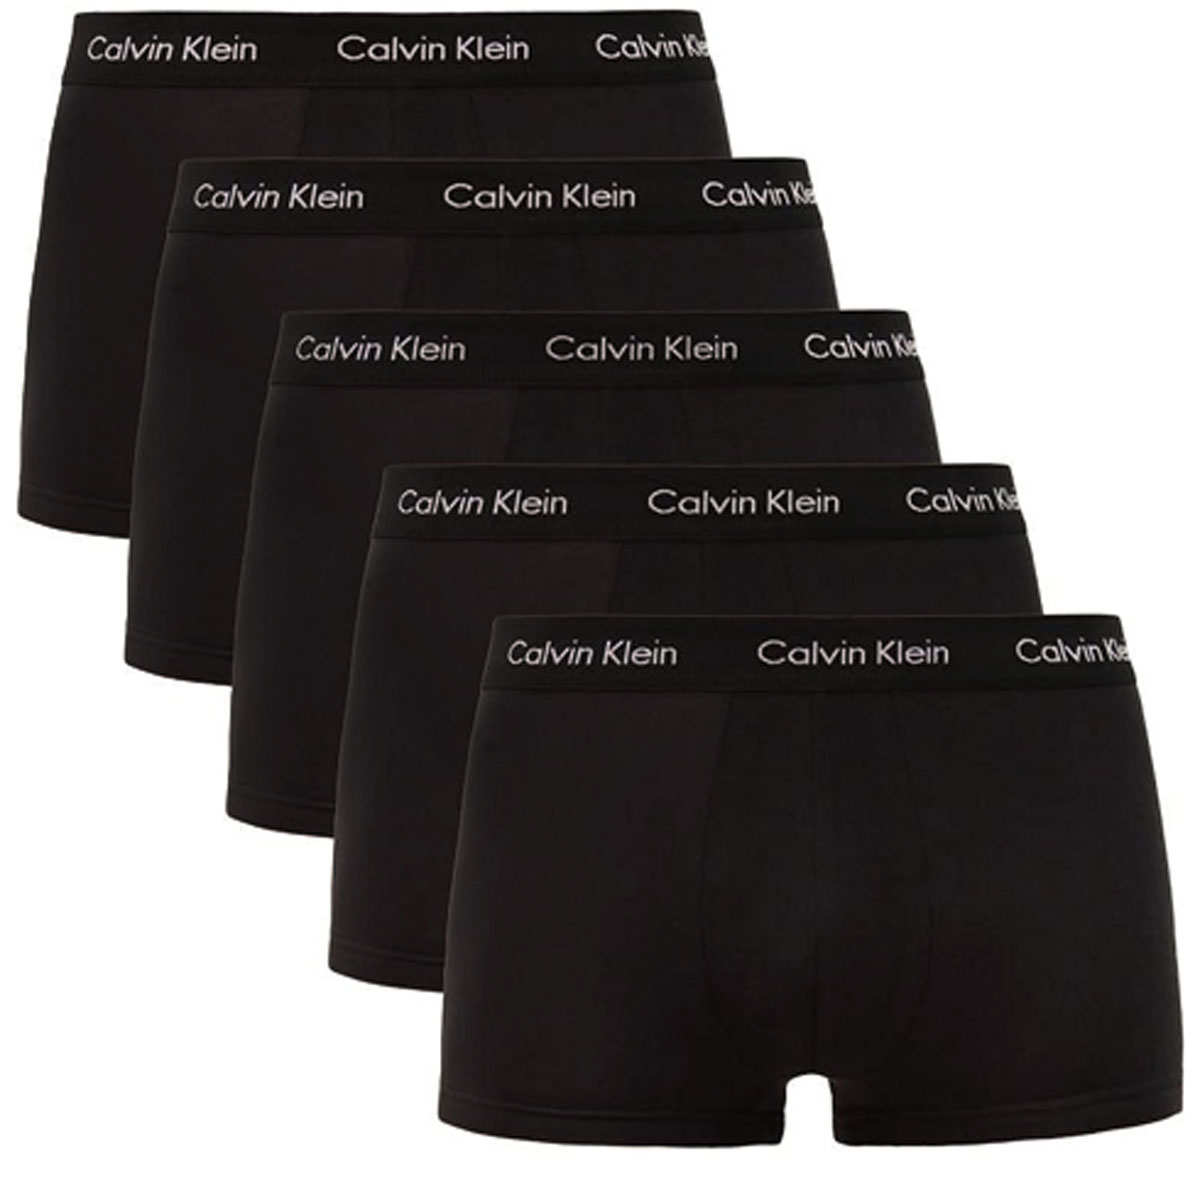 NU 21% KORTING: Calvin Klein hipster Logo-weefband (5 stuks)